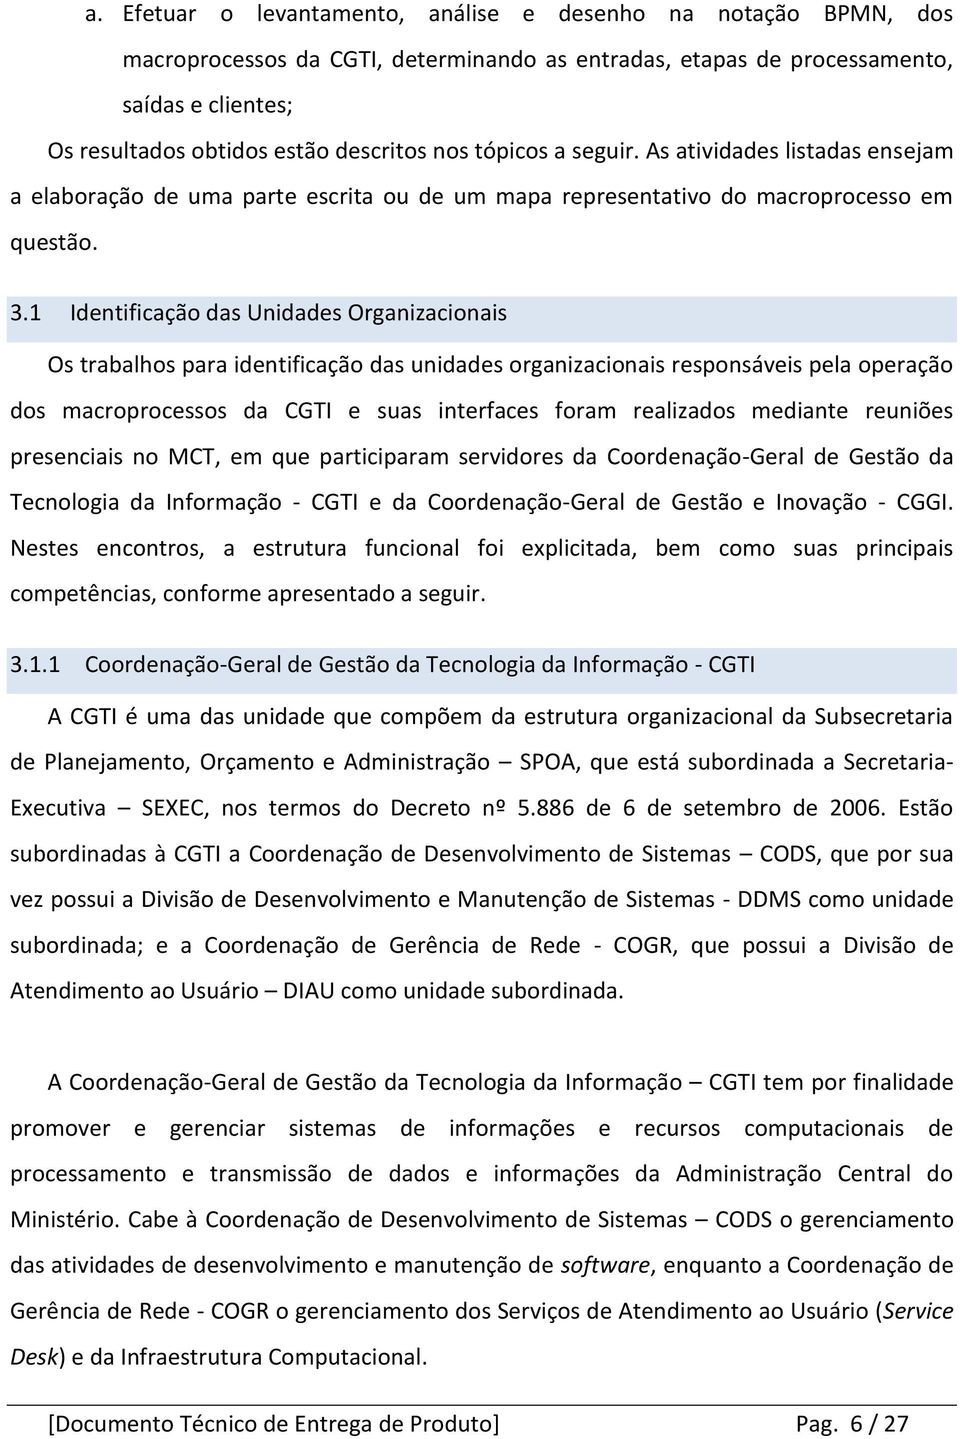 1 Identificação das Unidades Organizacionais Os trabalhos para identificação das unidades organizacionais responsáveis pela operação dos macroprocessos da CGTI e suas interfaces foram realizados